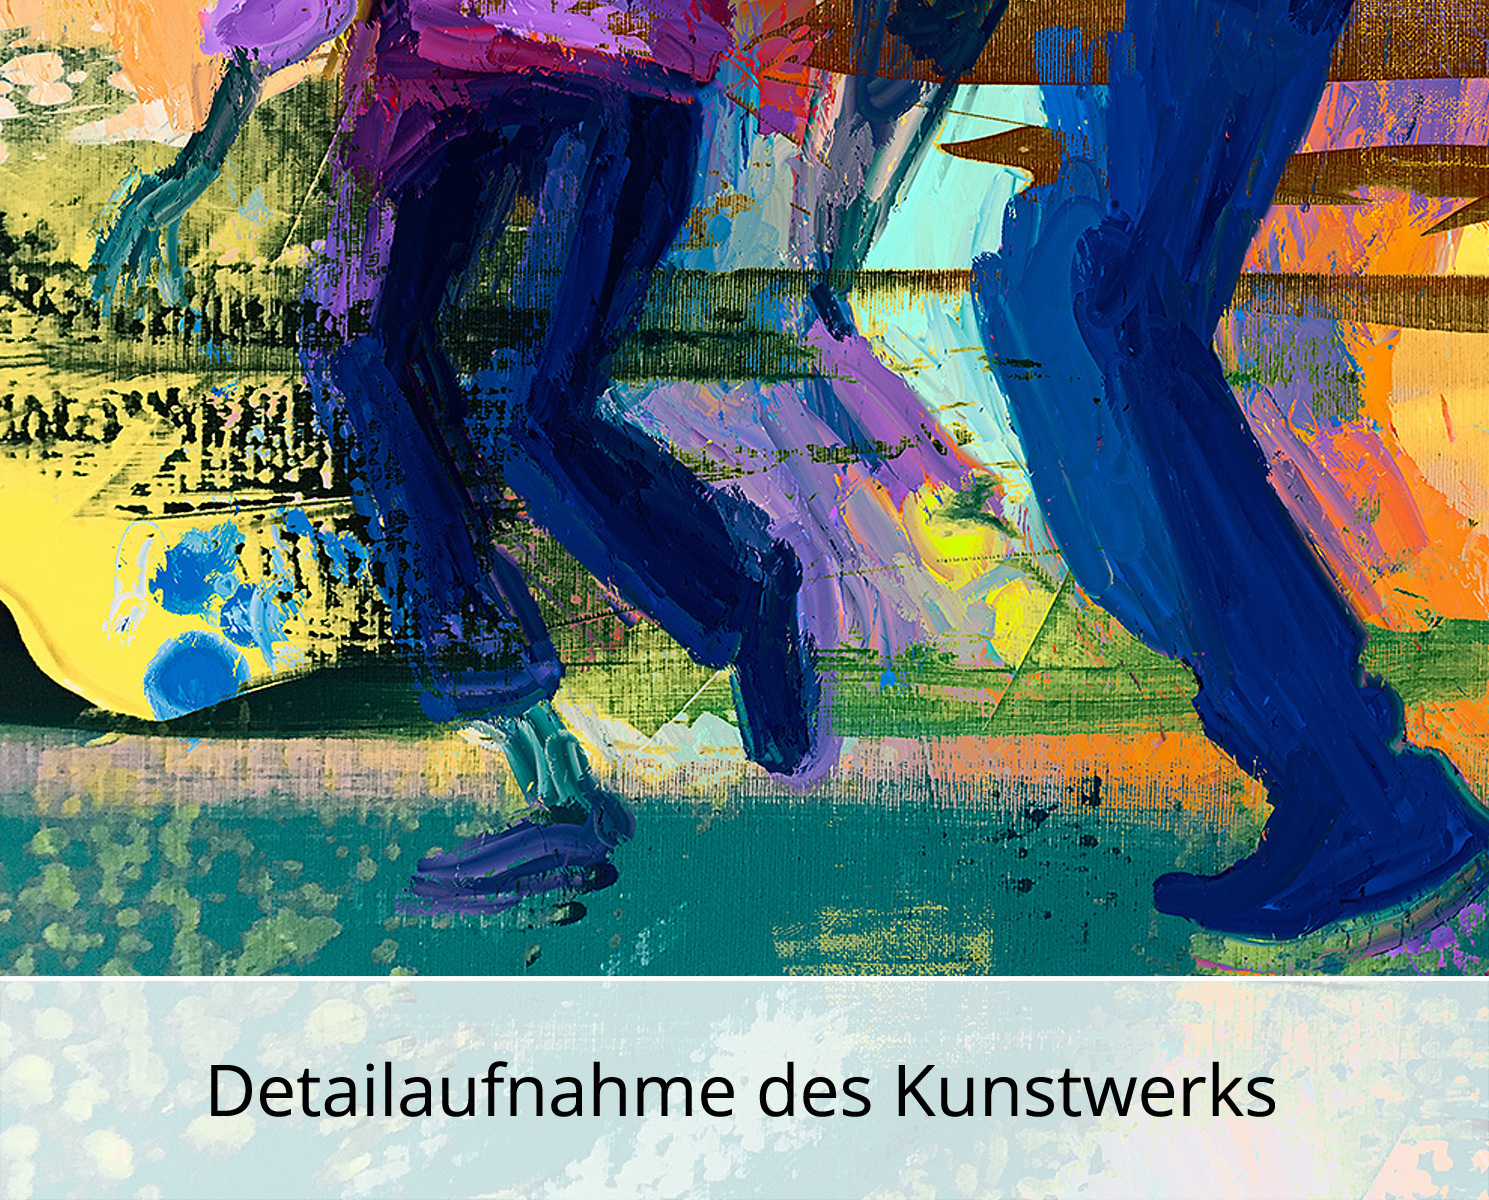 H. Mühlbauer-Gardemin: "Dancing", Moderne Pop Art, Original/serielles Unikat